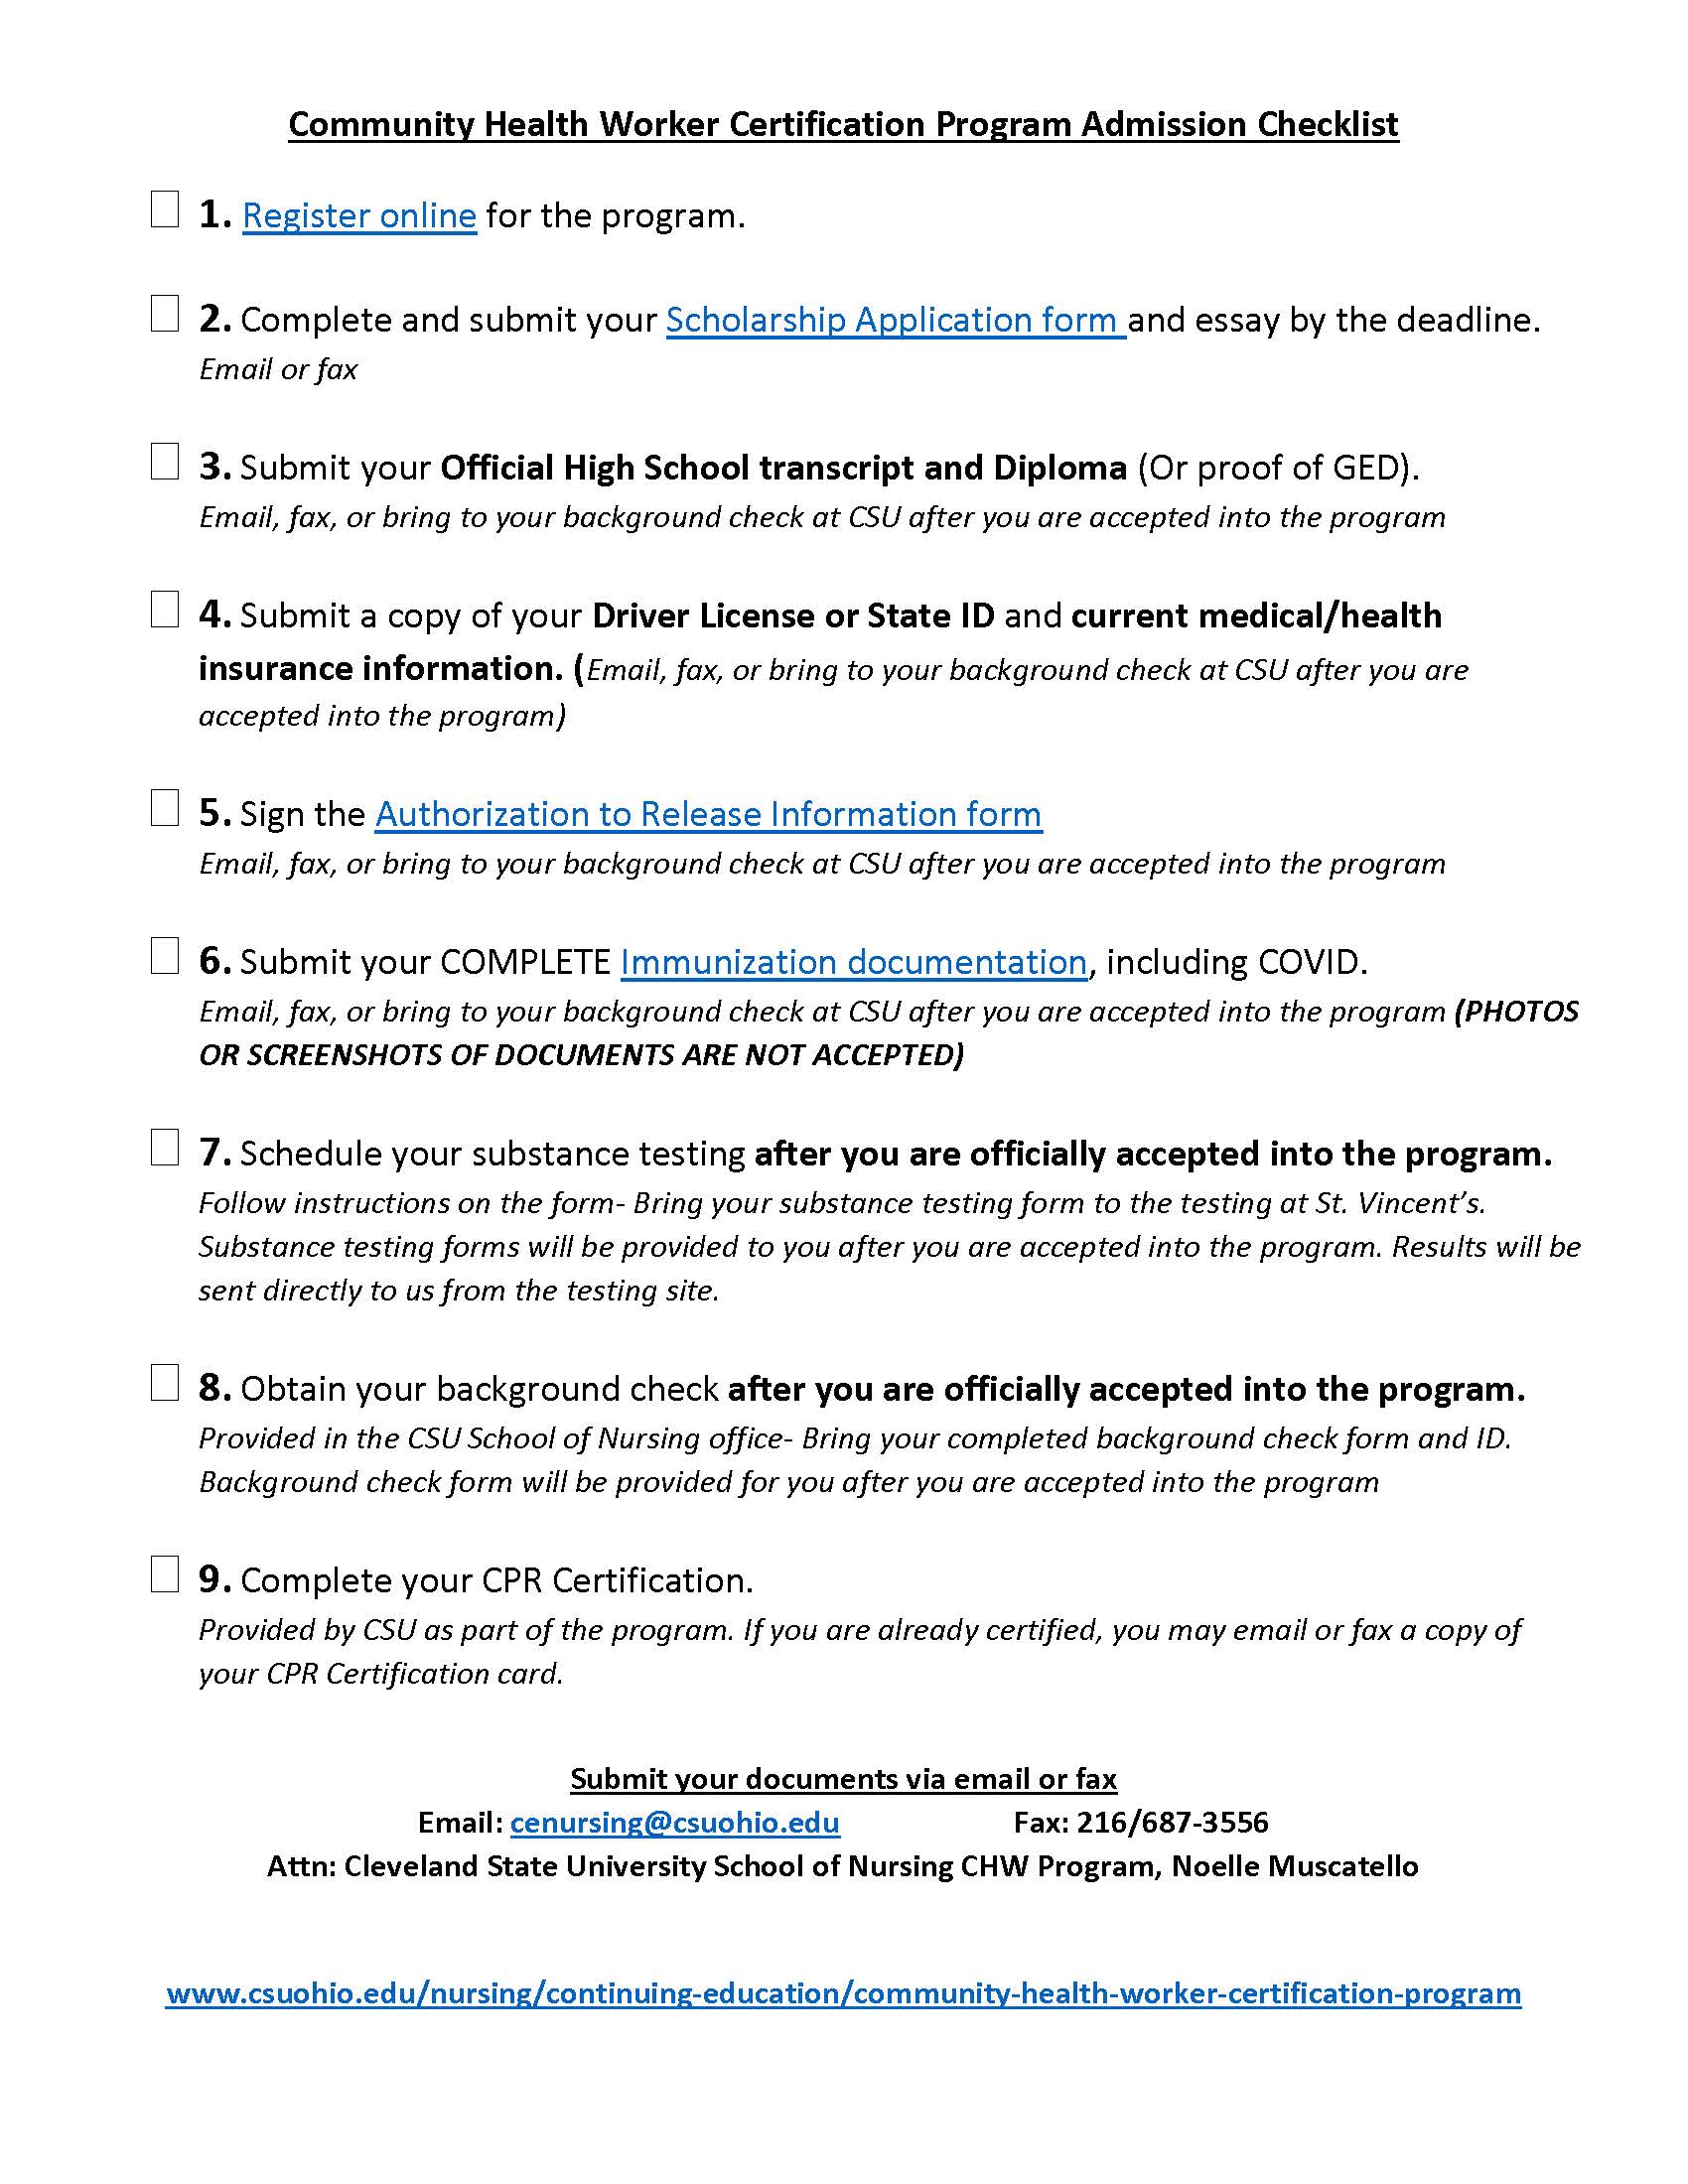 CHW Admissions Checklist